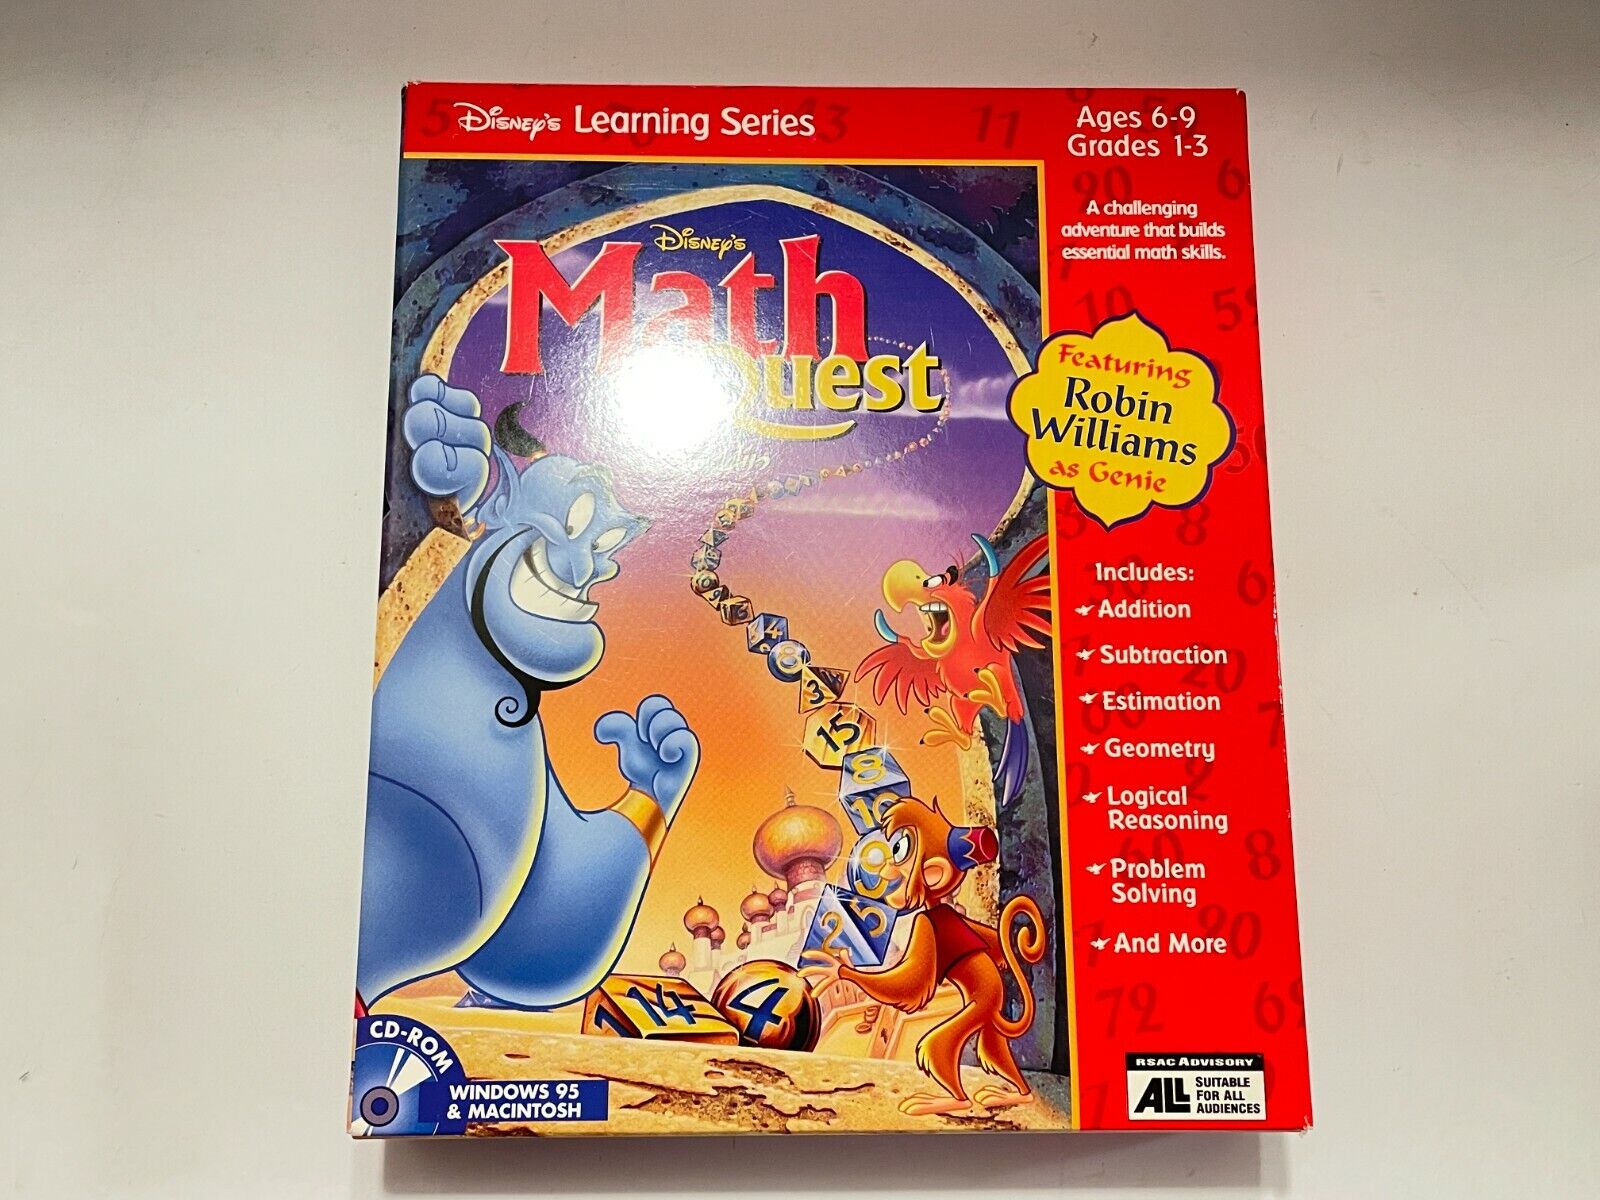 Disney’s Learning Series Math Quest w/ Aladdin CD-ROM Win 95/Mac PC Big Box NEW